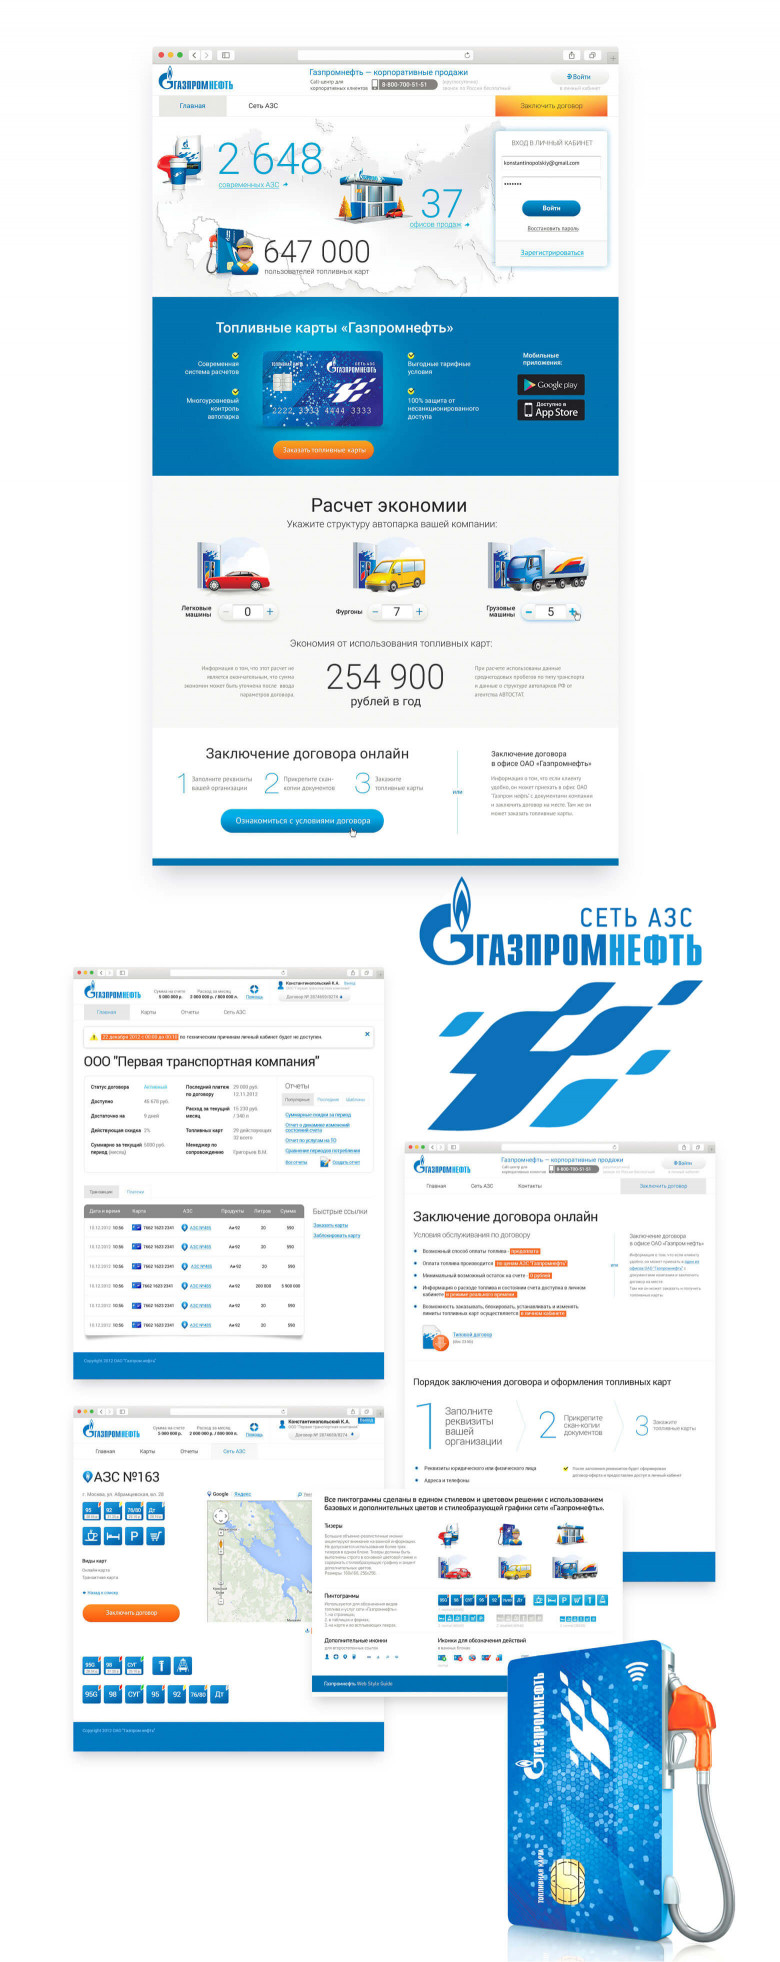 Система онлайн-процессинга по топливным картам «Газпромнефть»